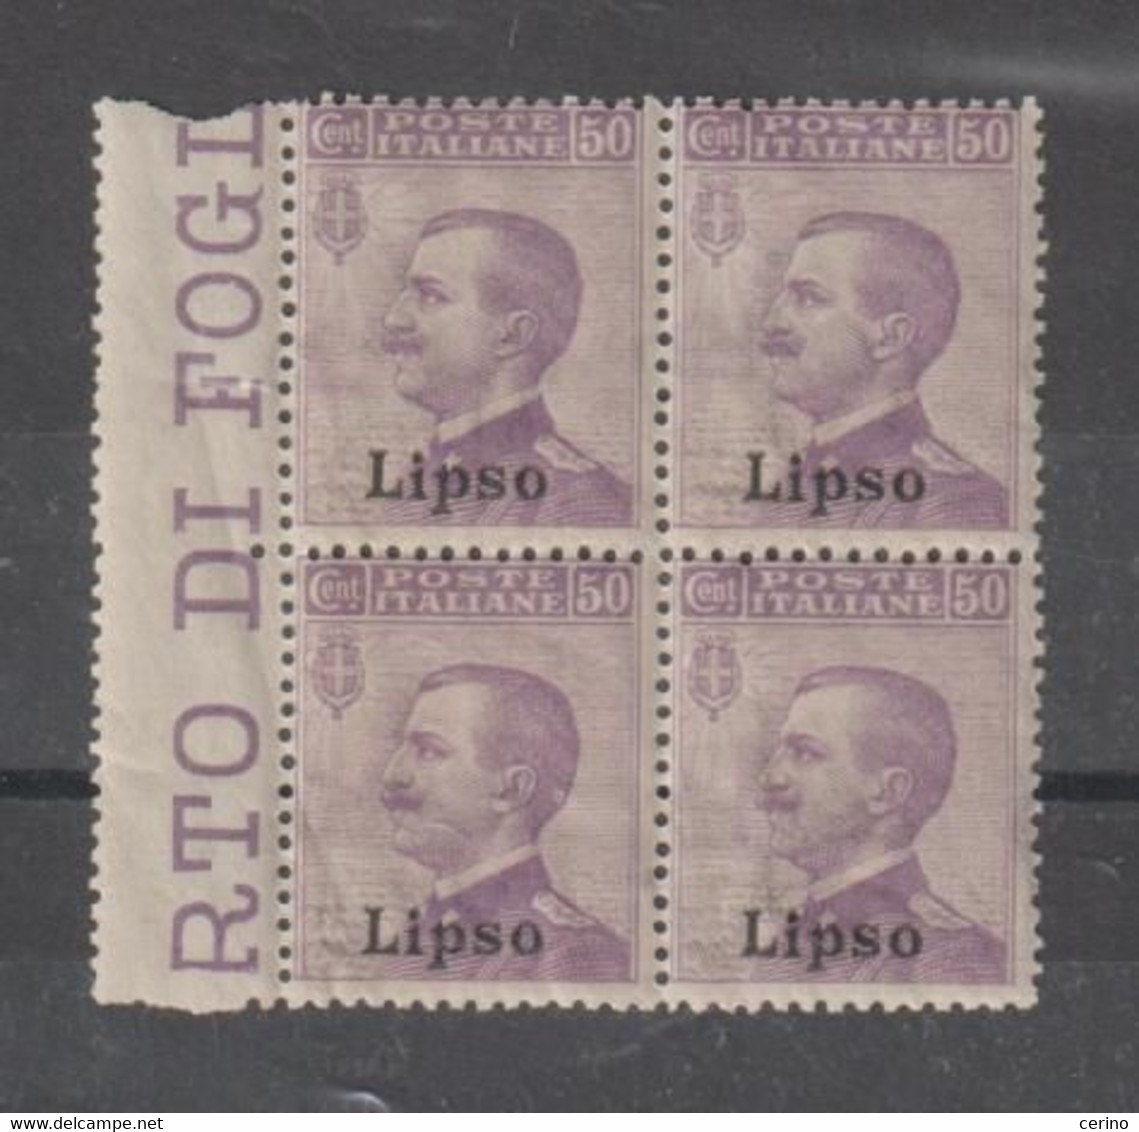 EGEO - LIPSO:  1912  SOPRASTAMPATO  -  50 C. VIOLETTO  BL. 4  N. -  SASS. 7 - Egeo (Lipso)